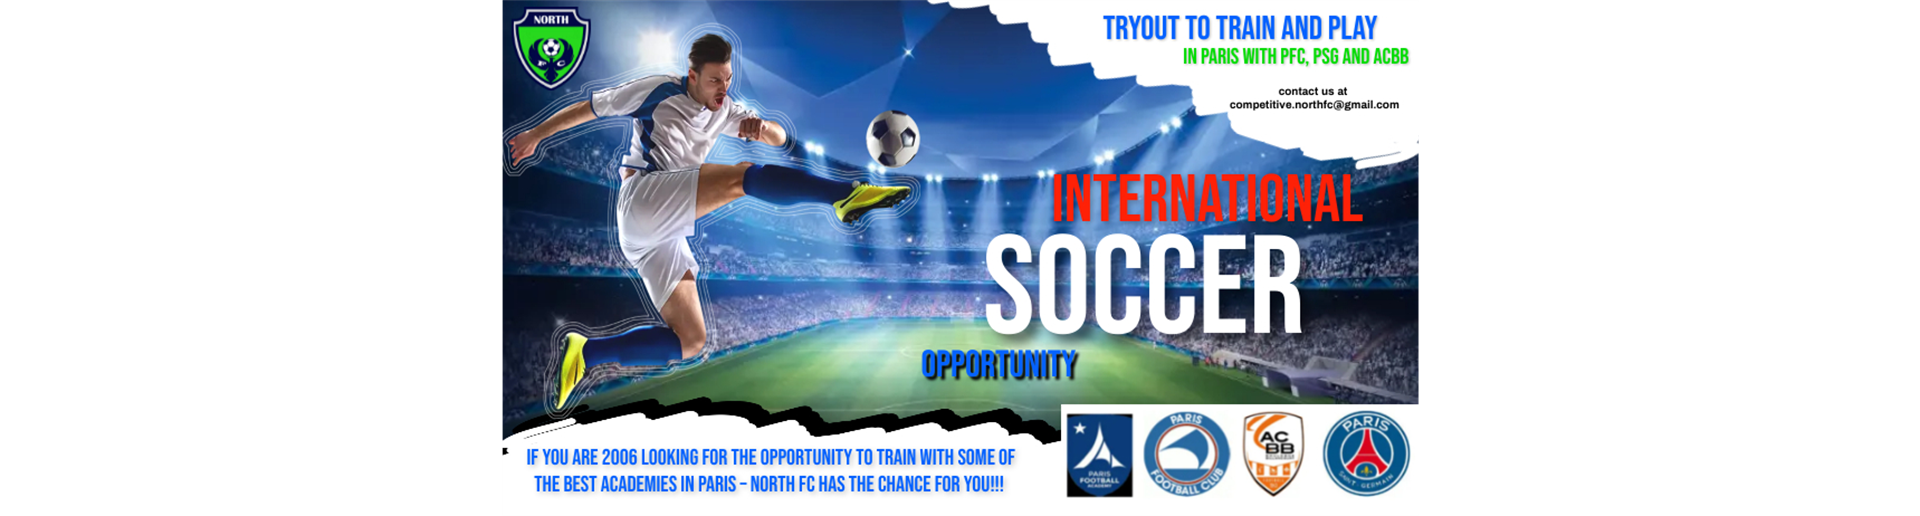 International Soccer Opportunity